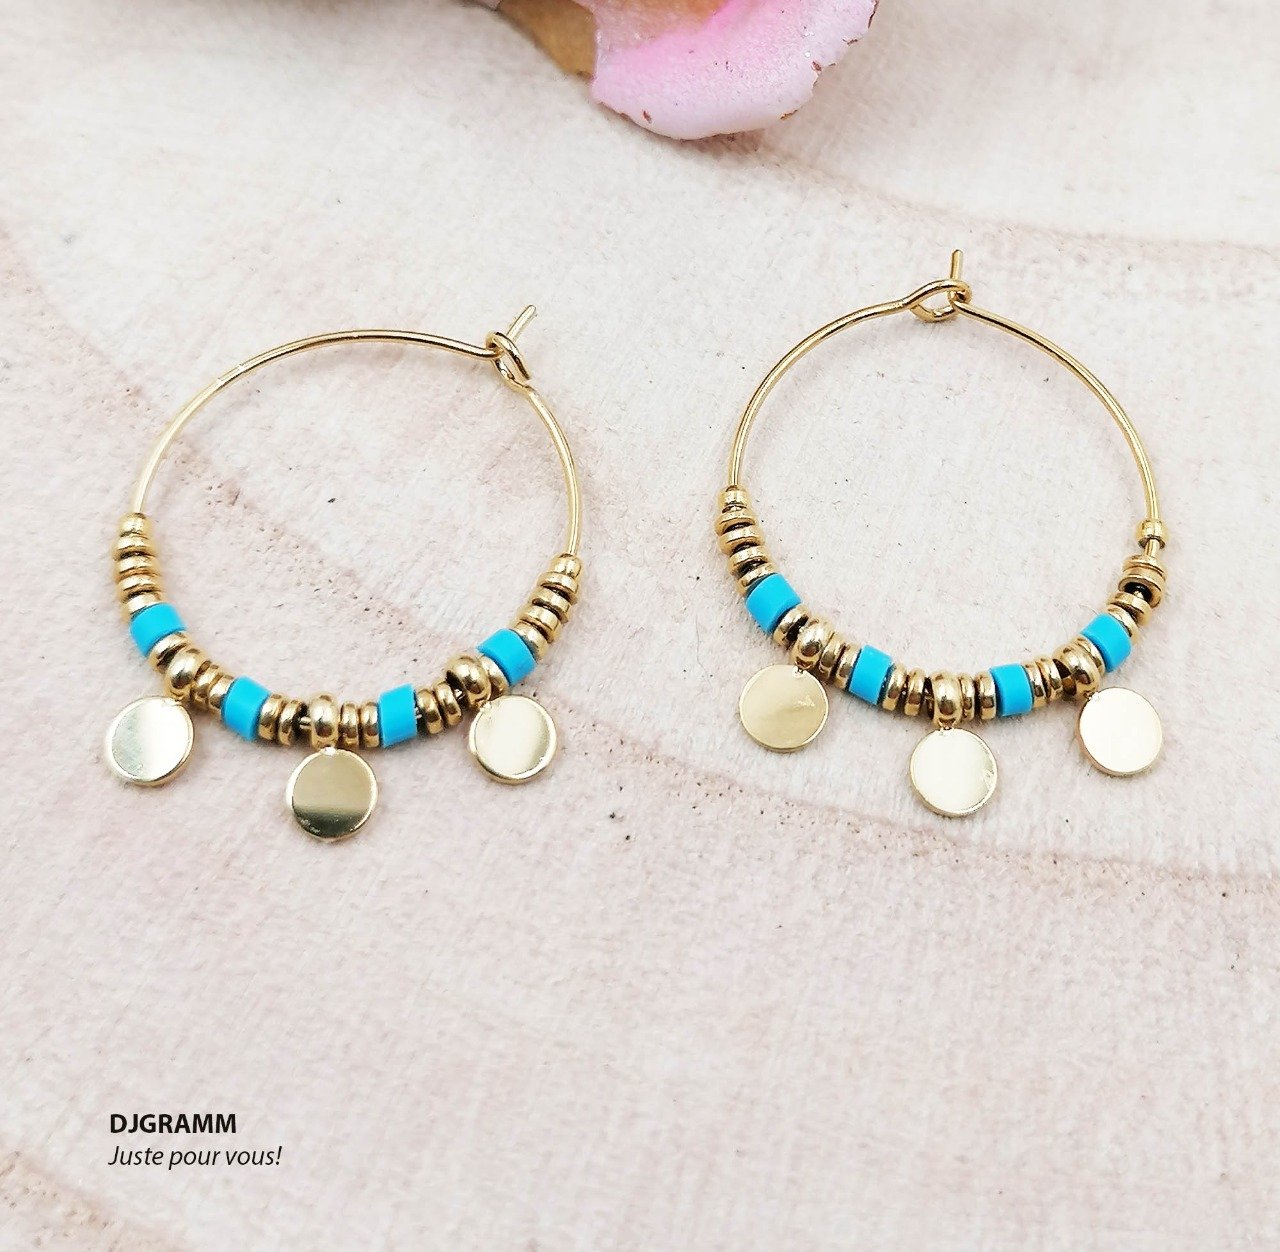 Boucles d'oreilles en acier inoxydable pampilles dorées, petits anneaux dorés et bleus turquoises